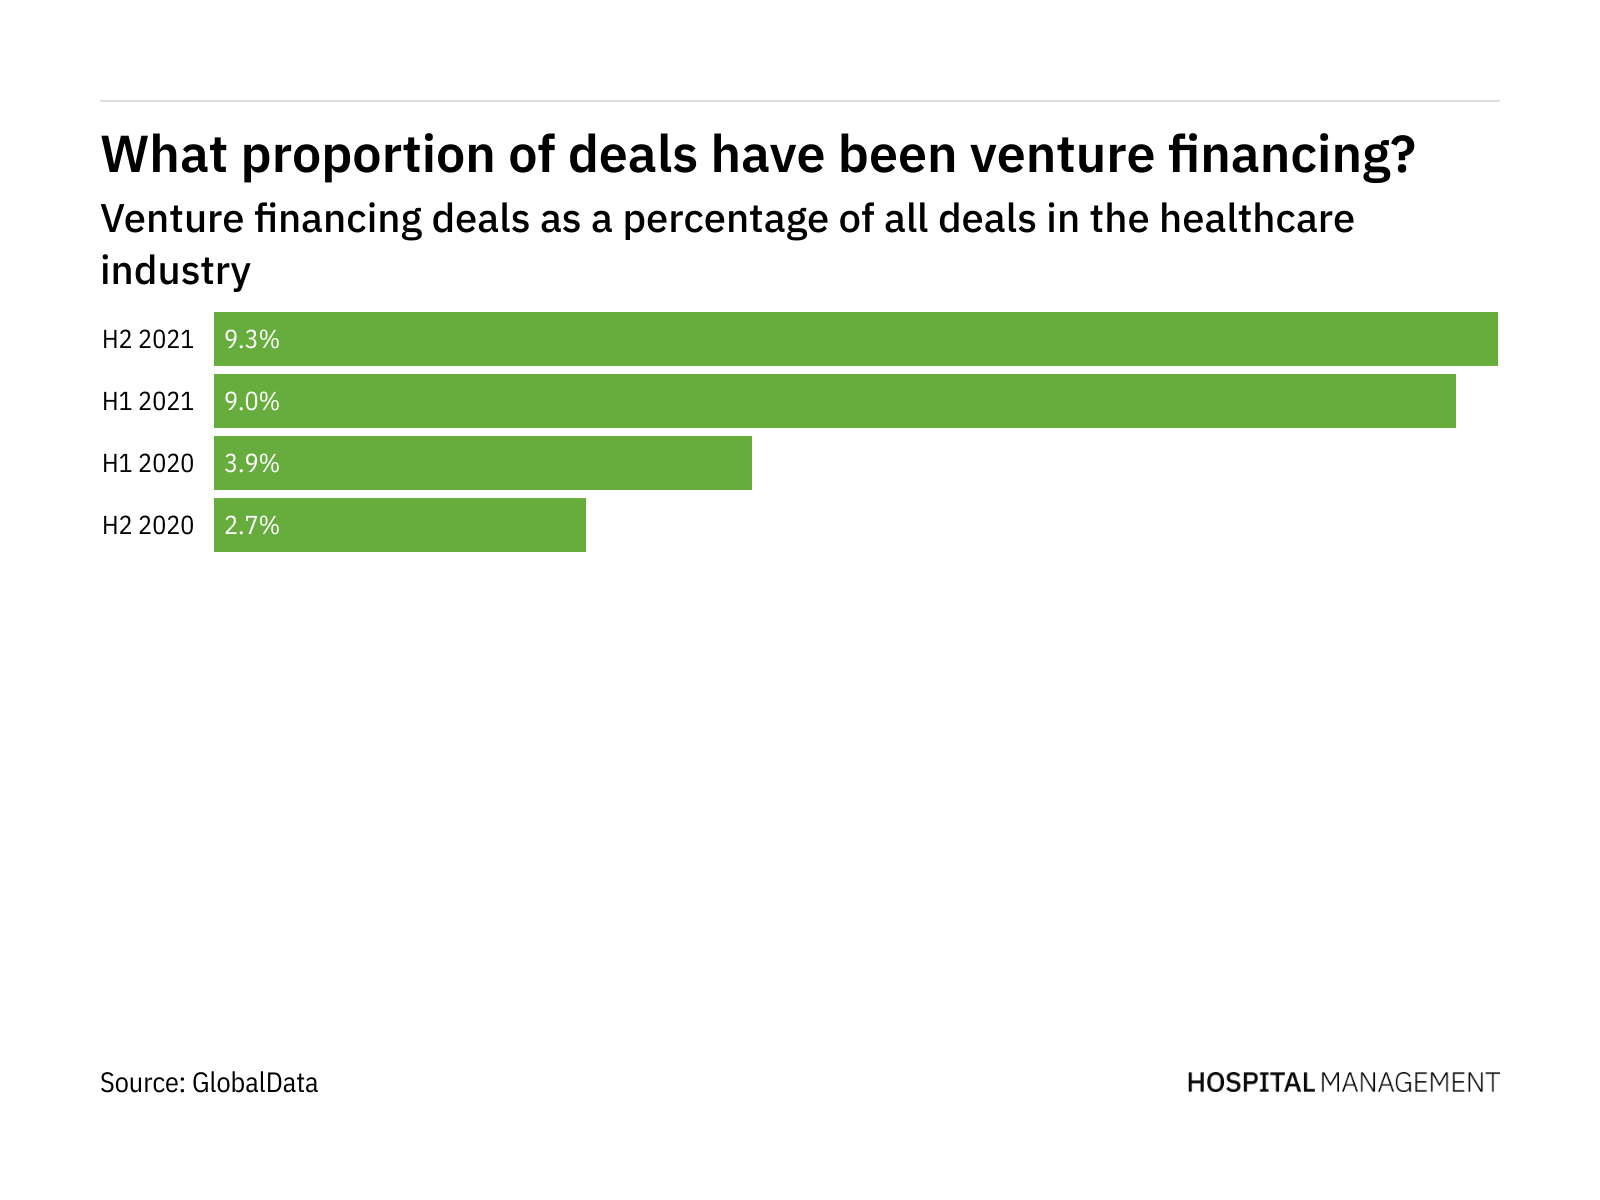 Venture financing deals in healthcare soared in H2 2021